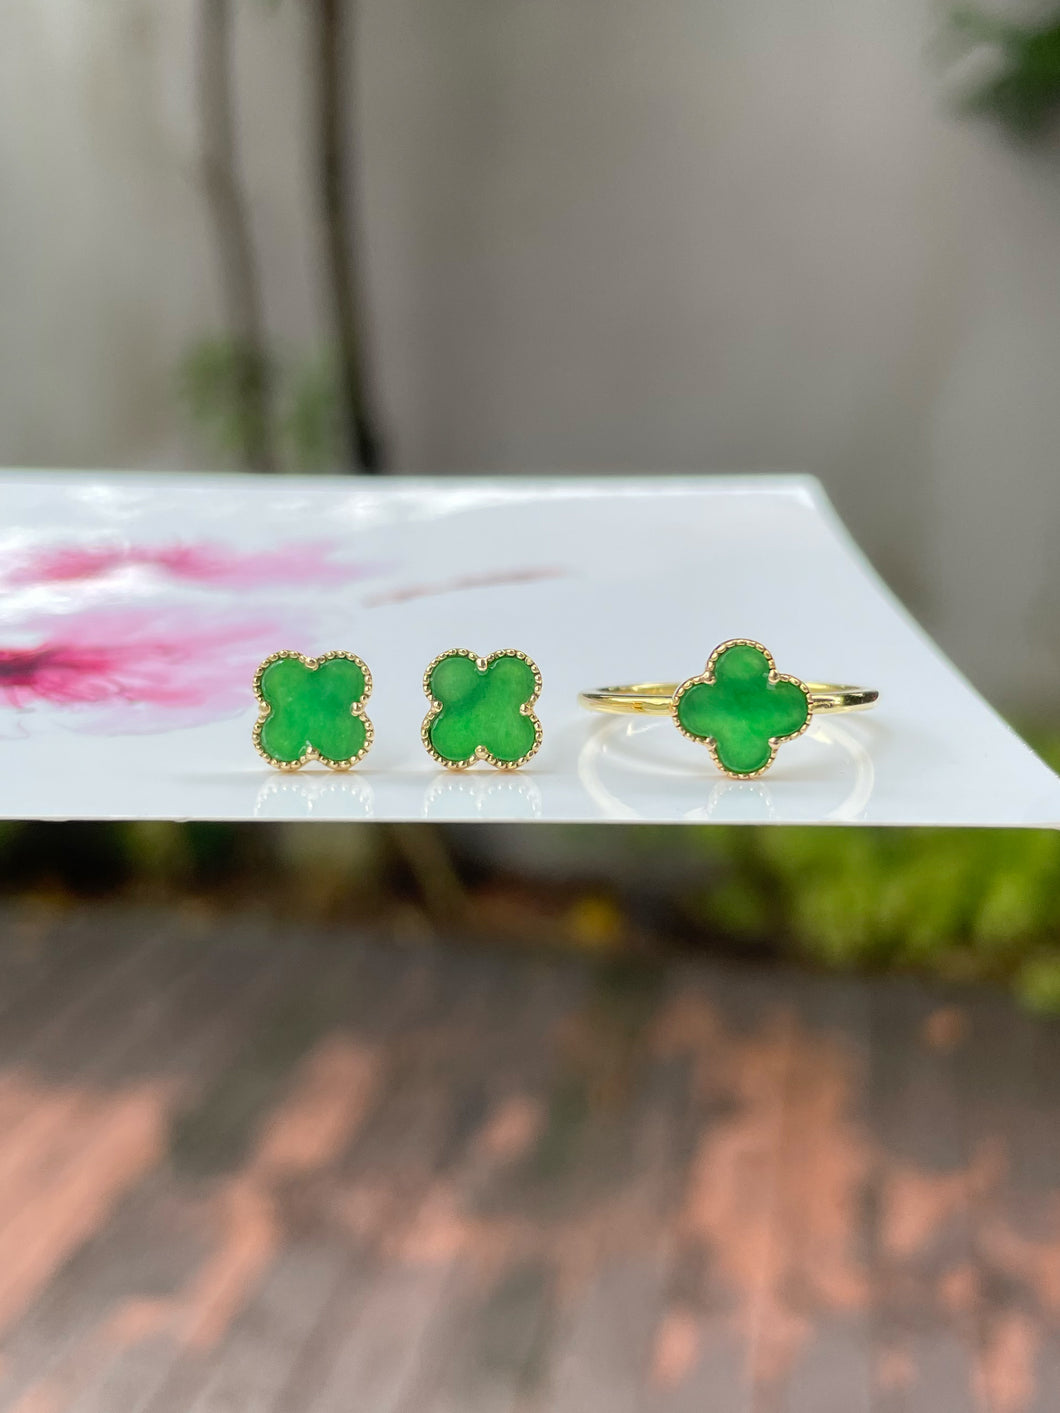 Green Clover Jadeite Ring & Earrings (NJS008)